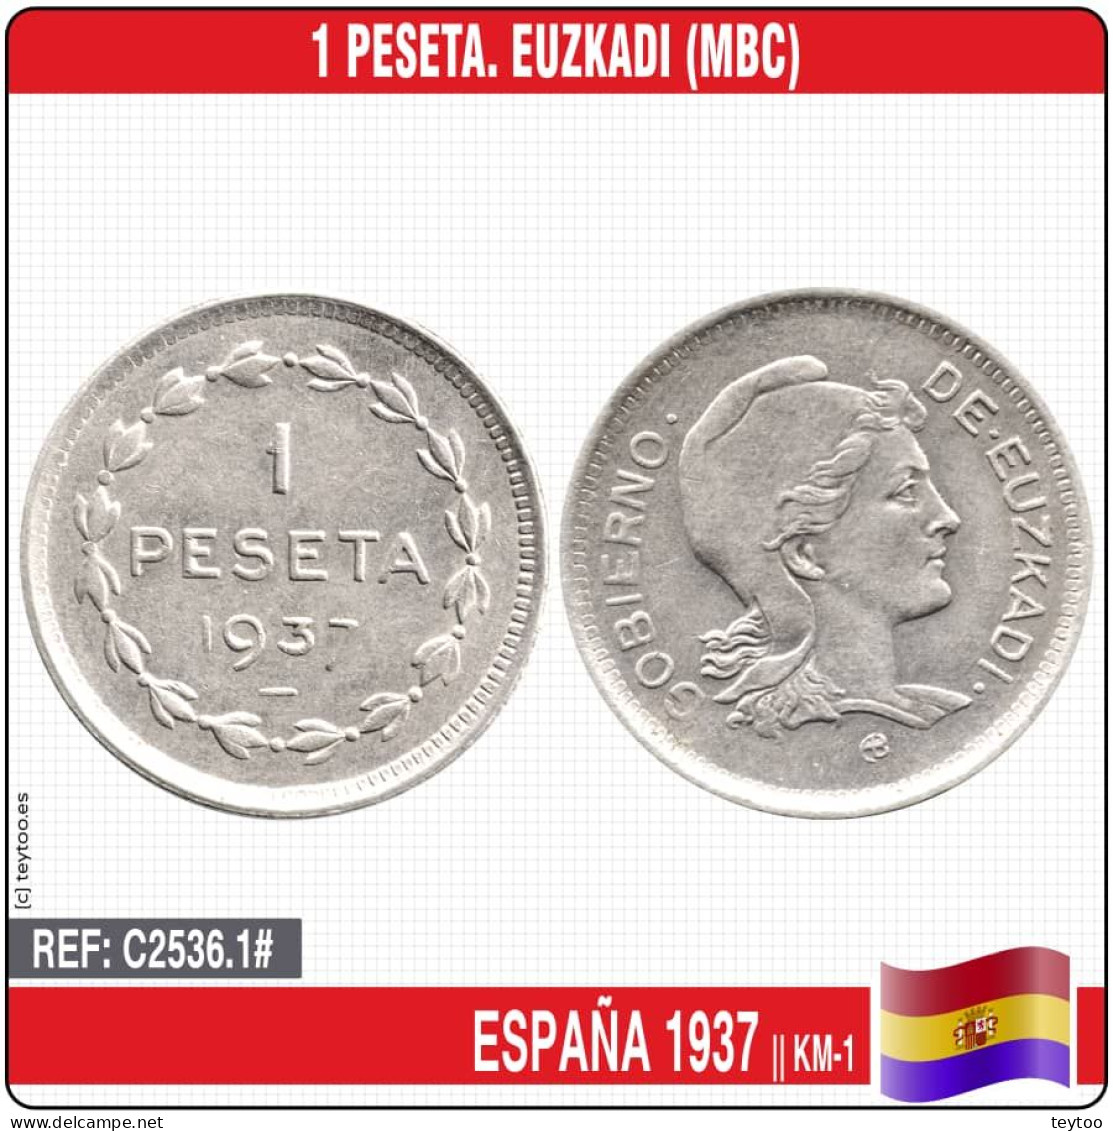 C2536.1# España 1937. 1 Peseta. Euzkadi (MBC) KM-1 - Republican Location